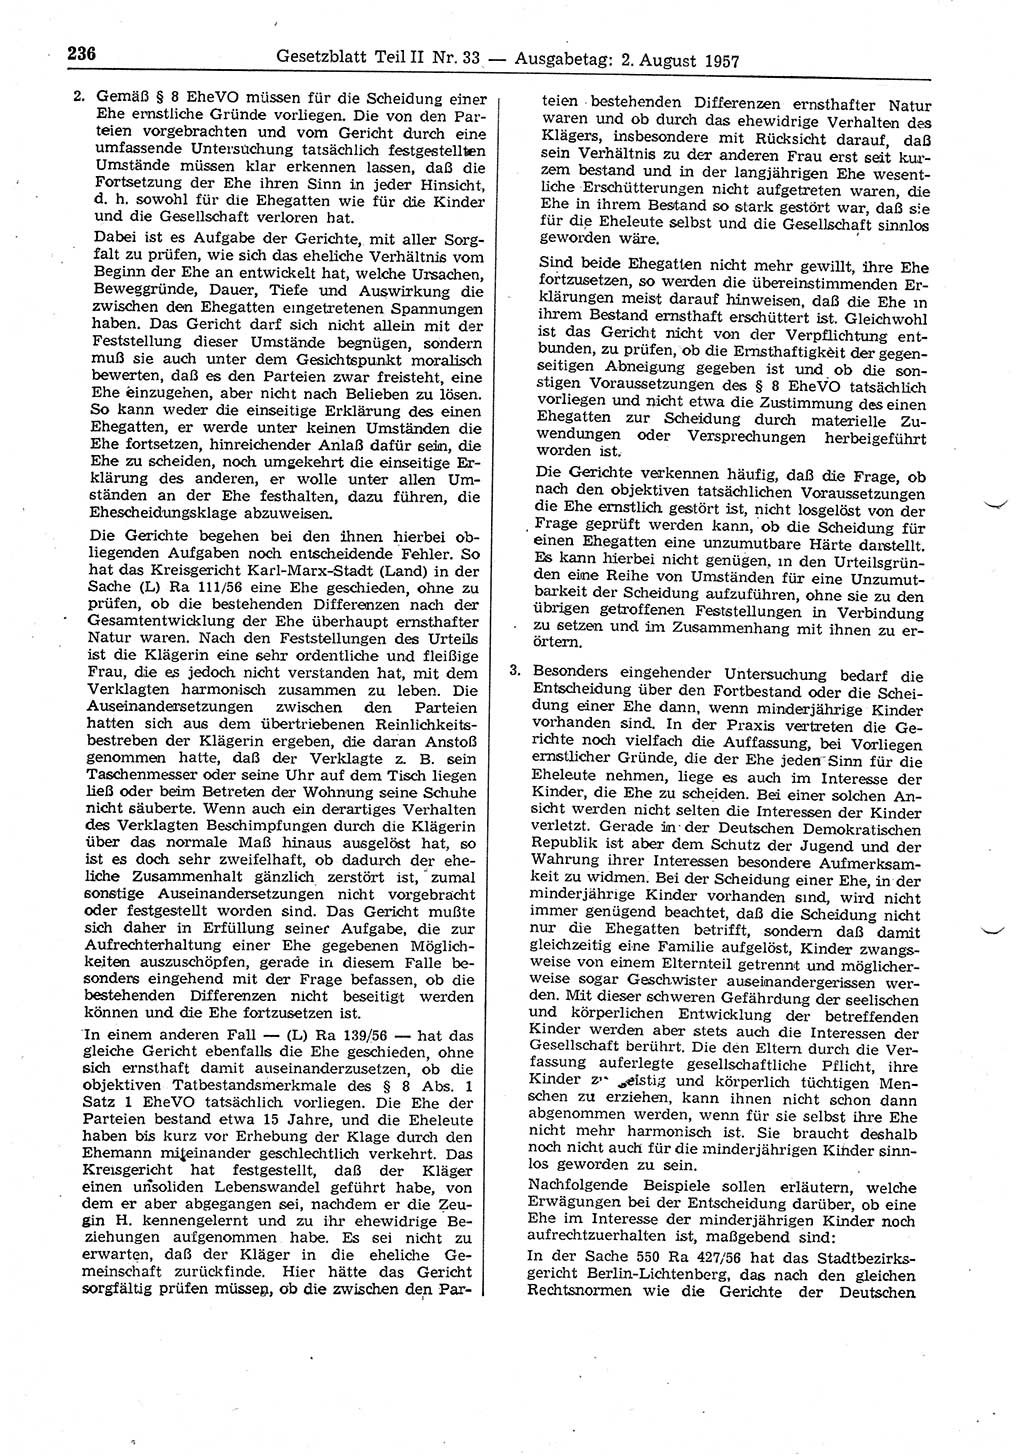 Gesetzblatt (GBl.) der Deutschen Demokratischen Republik (DDR) Teil ⅠⅠ 1957, Seite 236 (GBl. DDR ⅠⅠ 1957, S. 236)